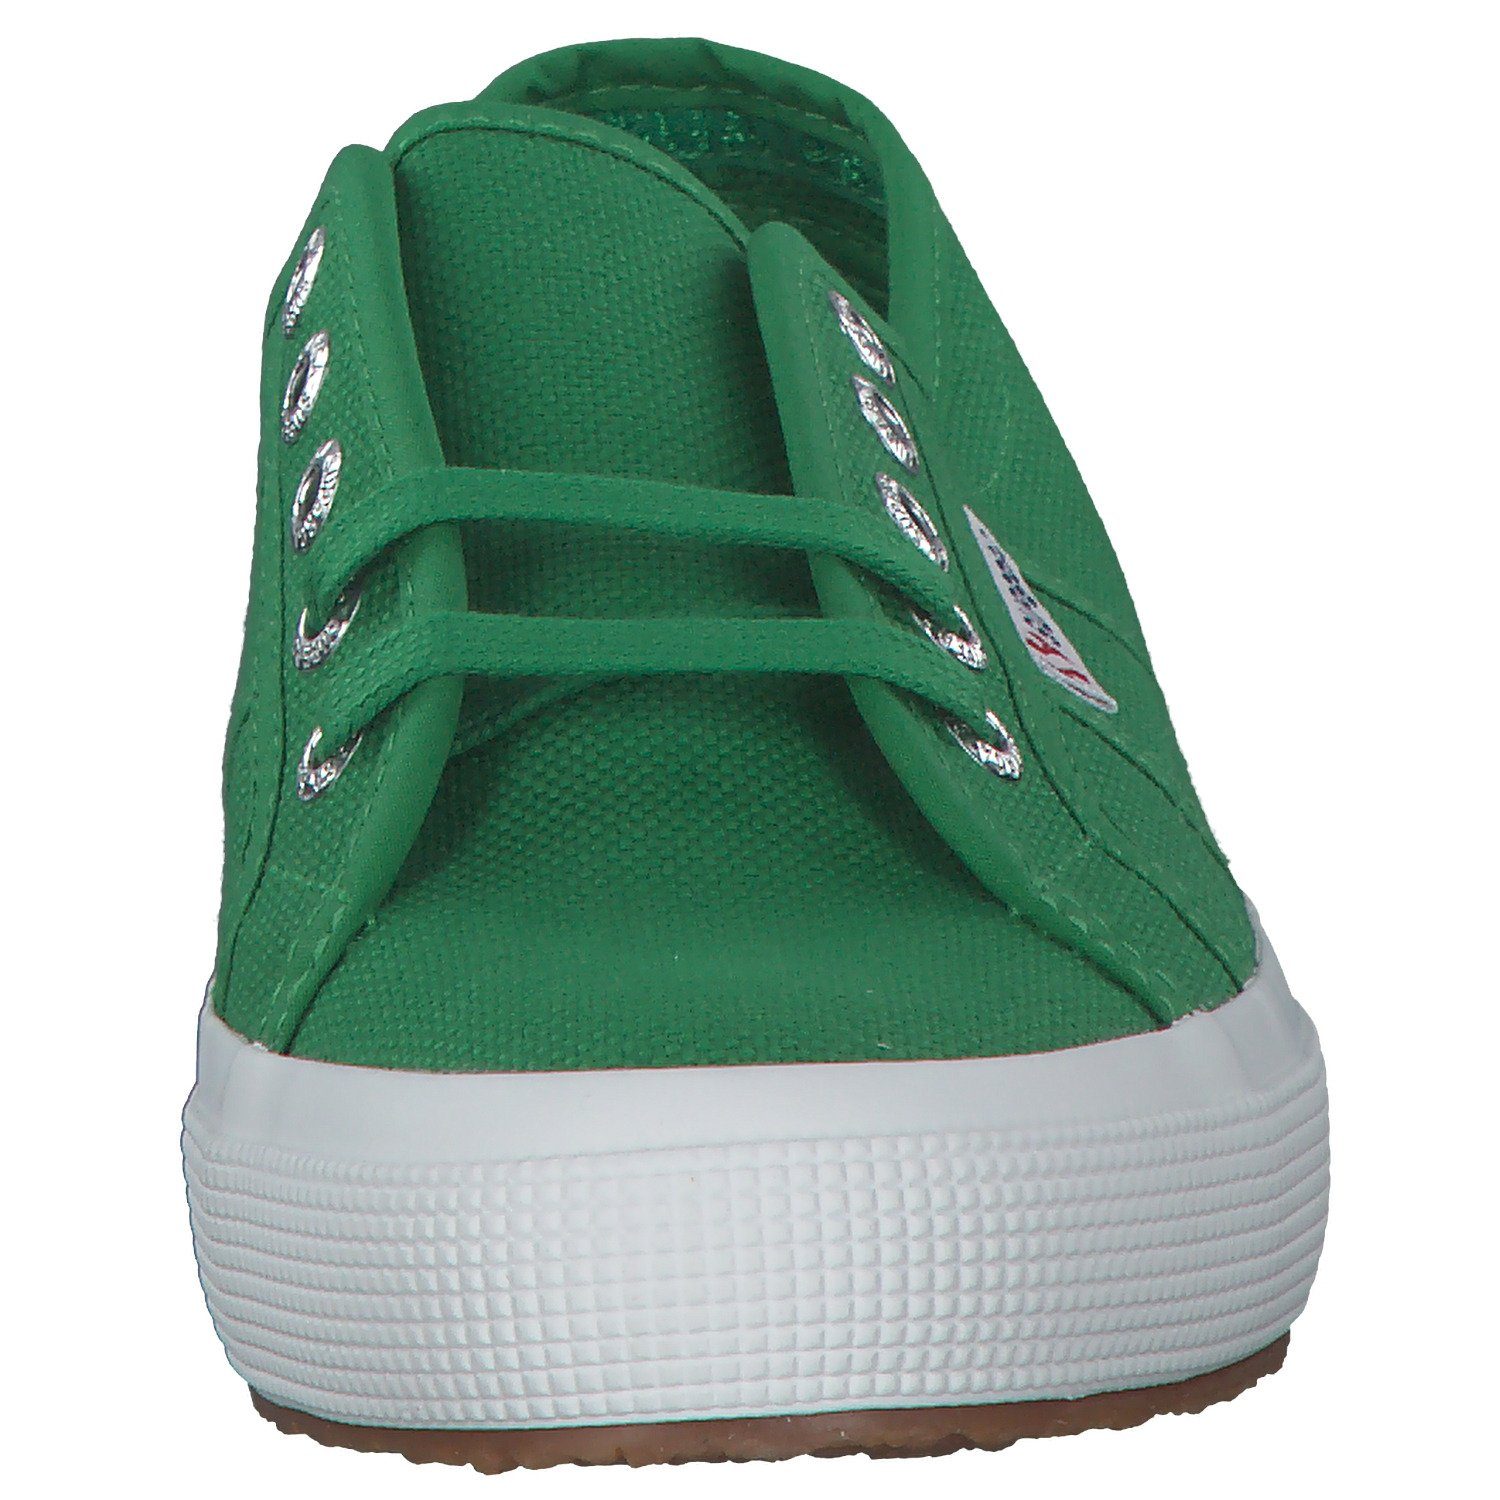 Classic green Sneaker island (19801315) 2750 Cotu Superga S000010 Superga